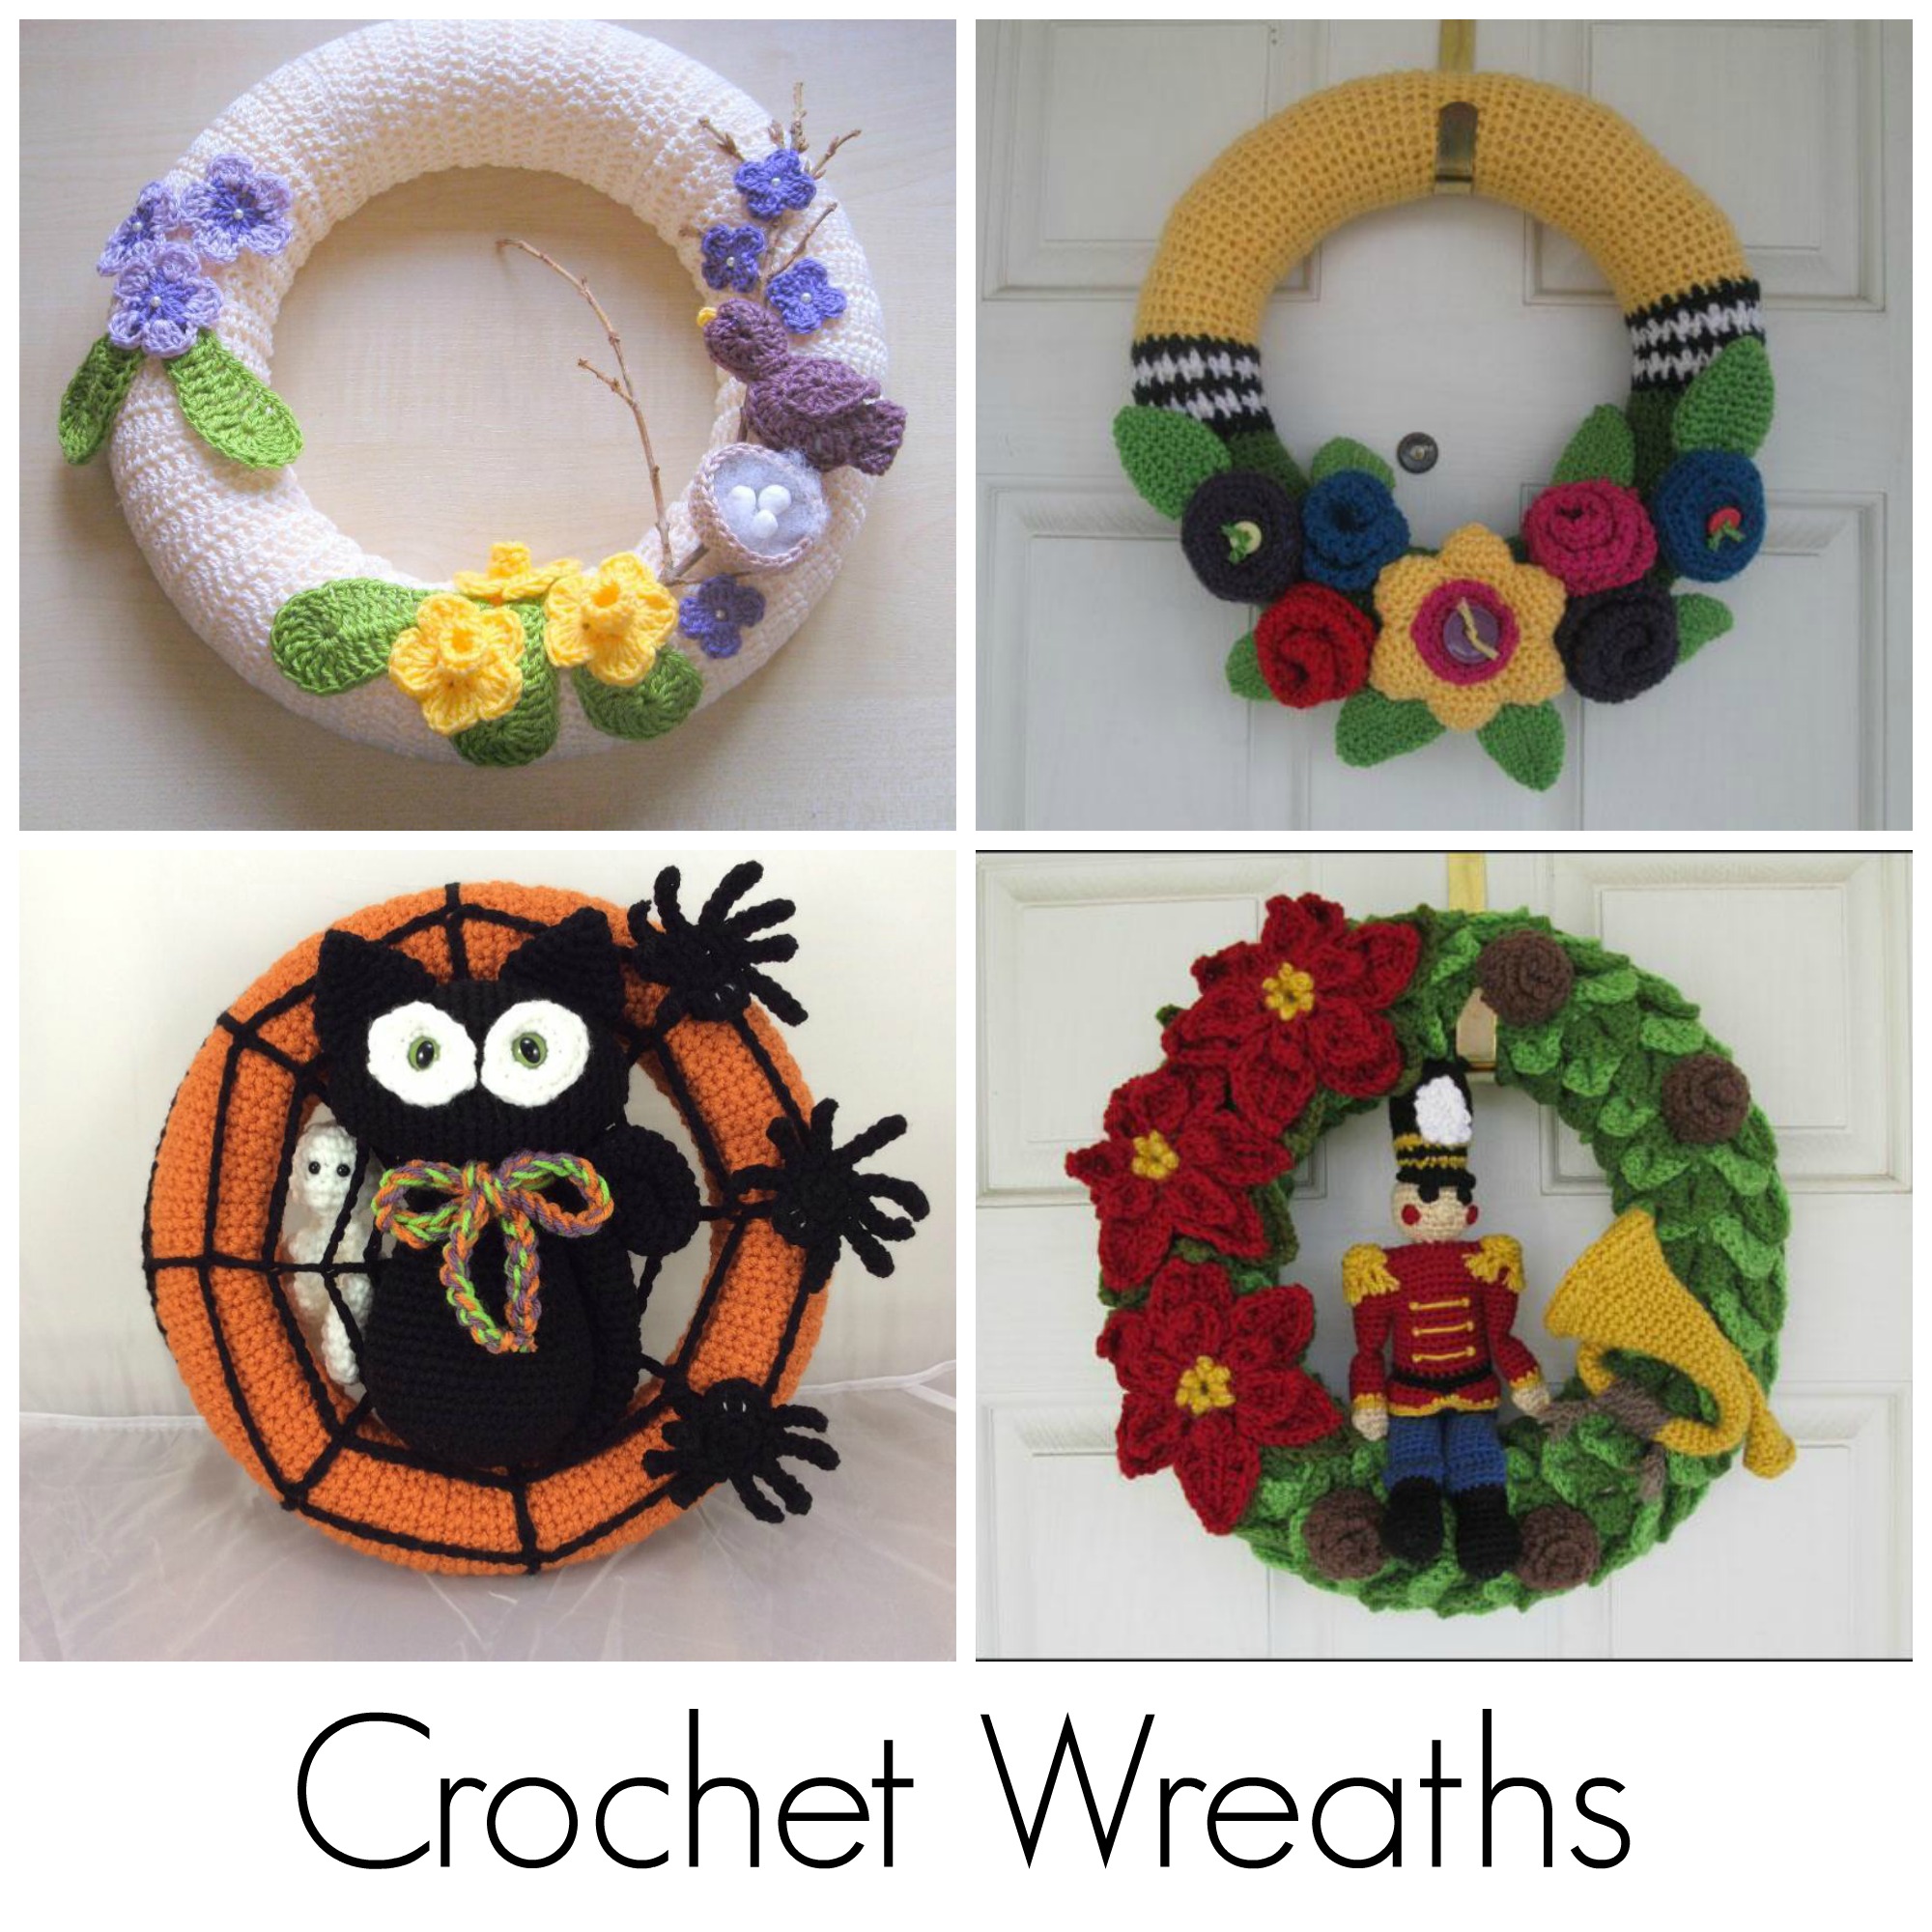 Crochet Wreaths